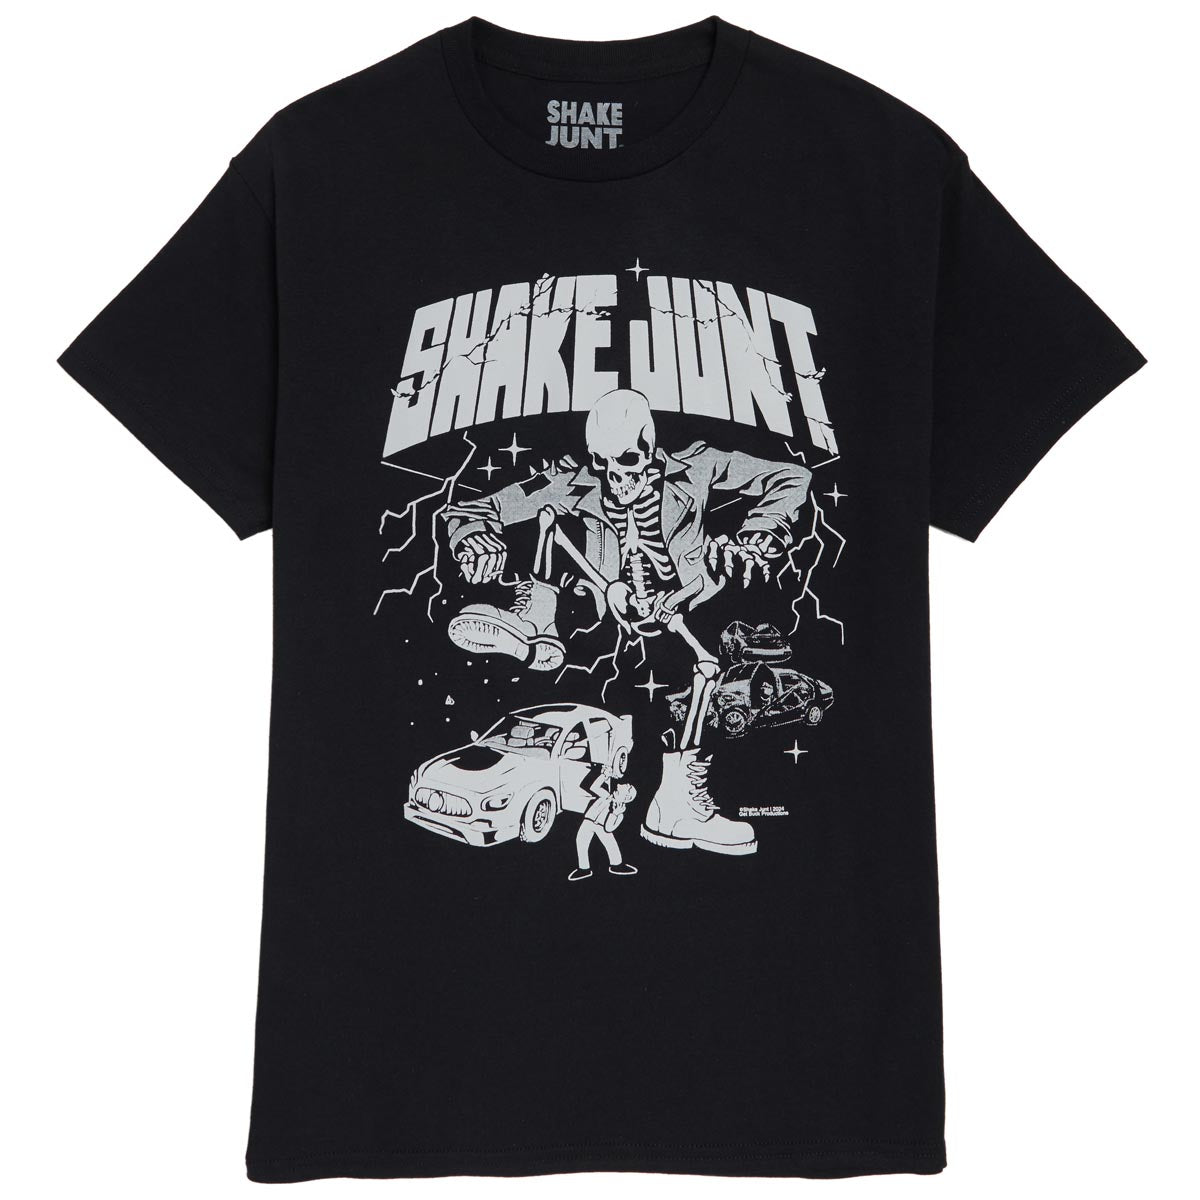 Shake Junt Rage T-Shirt - Black image 1